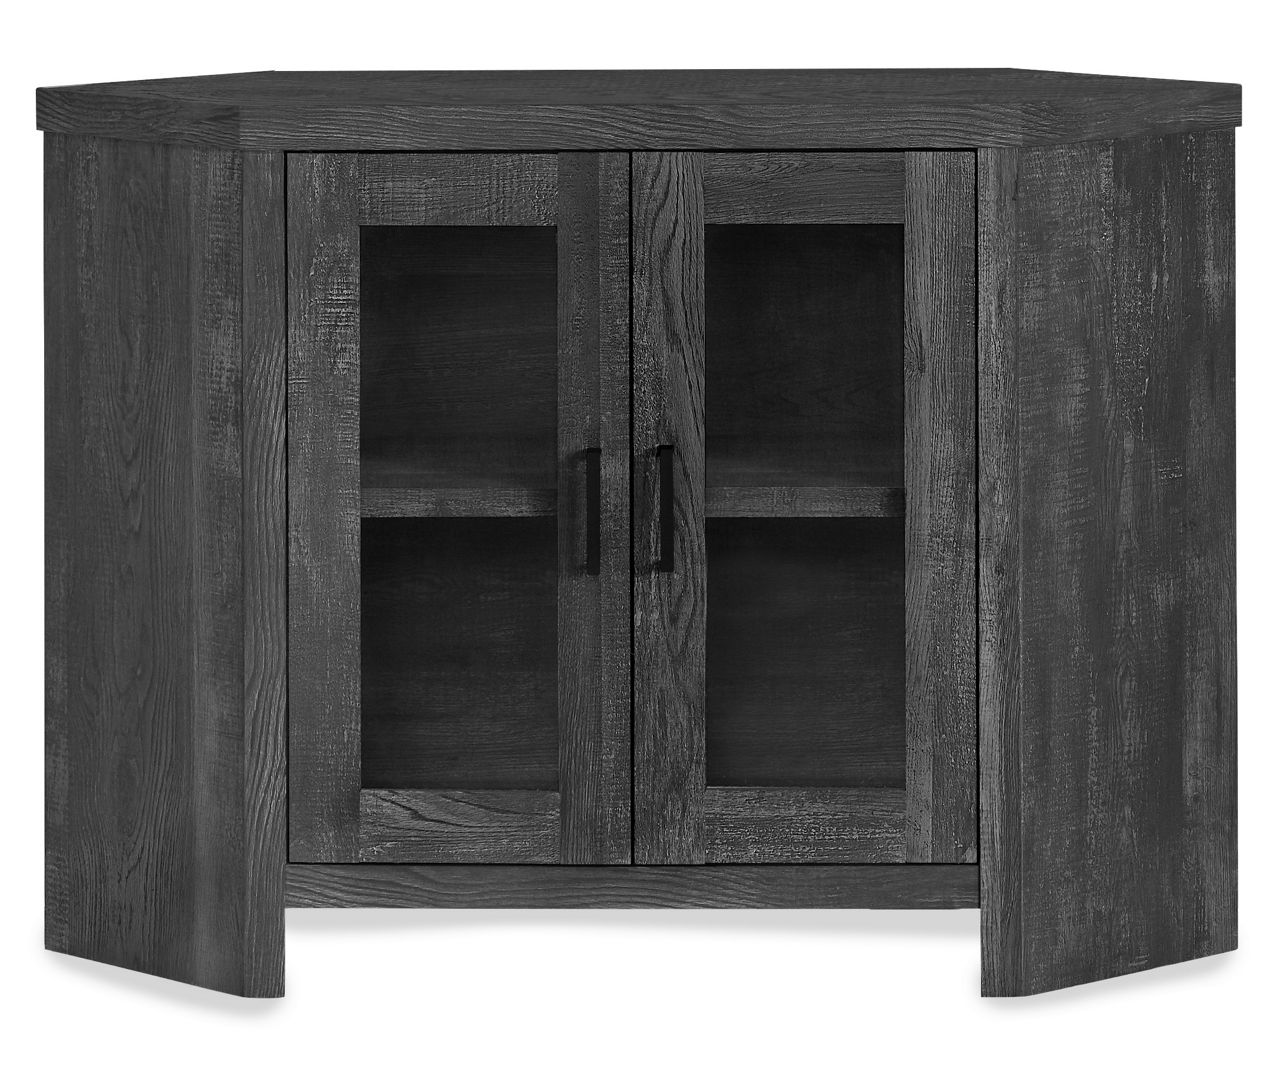 42" Black Reclaimed Wood Look Corner TV Stand